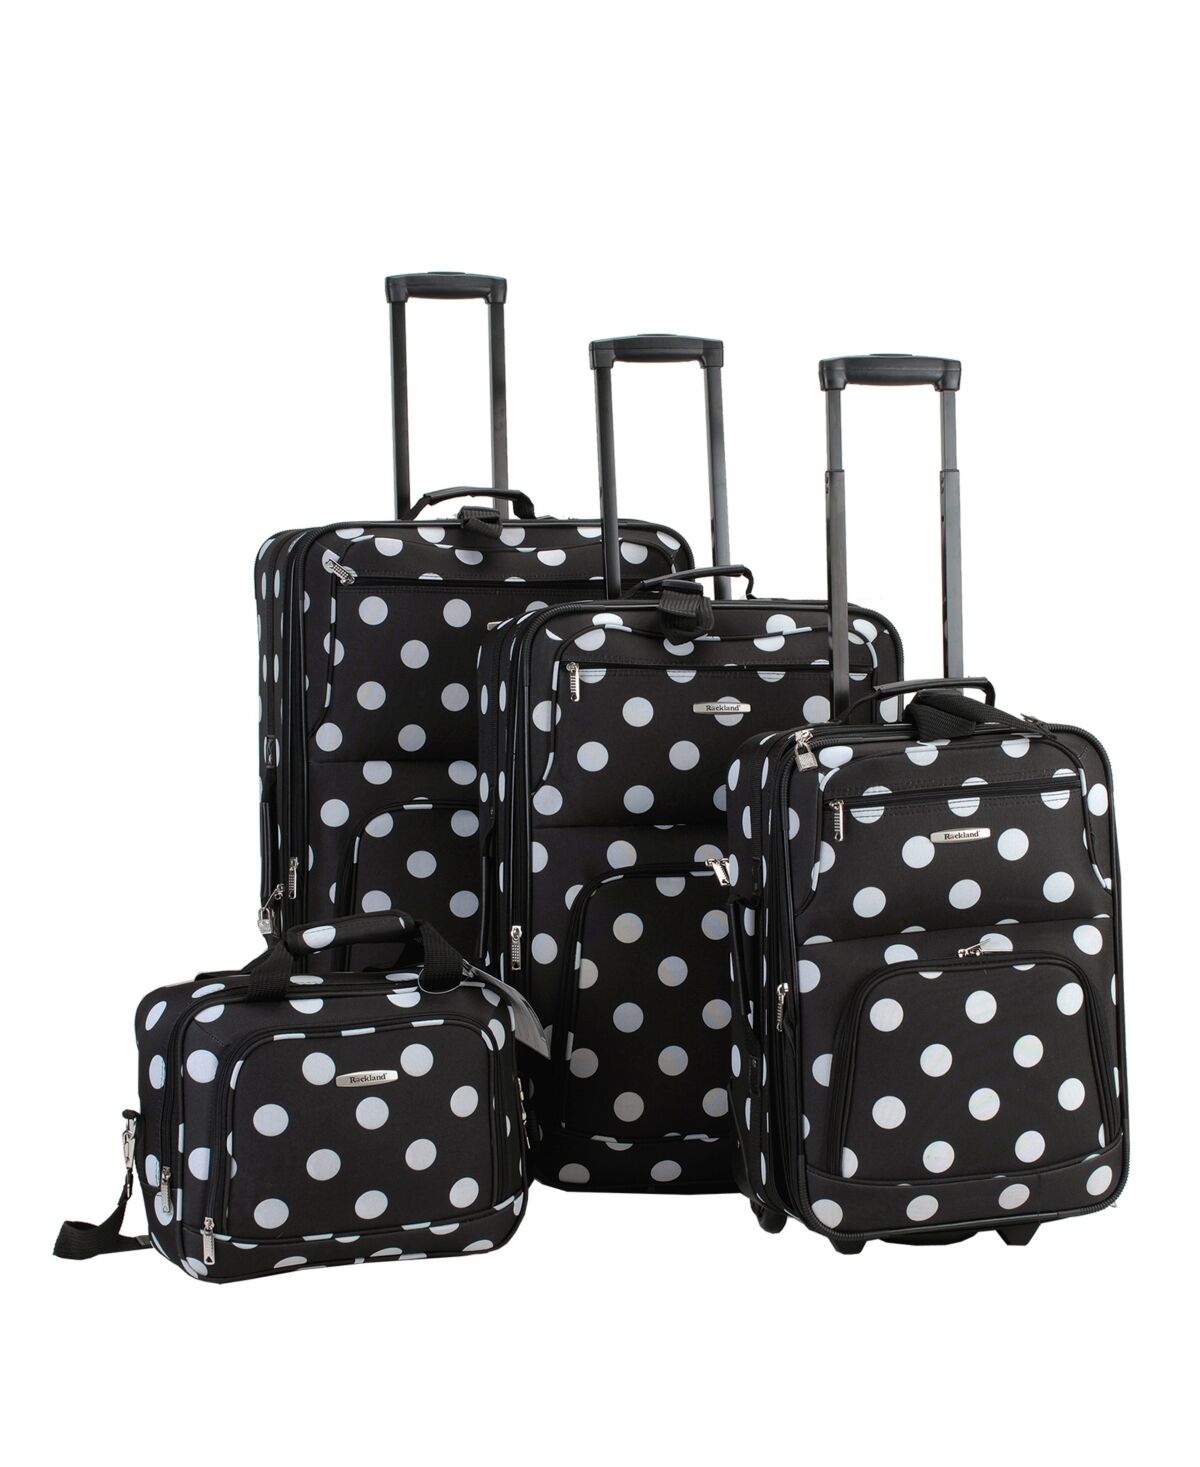 Rockland 4-Pc. Softside Luggage Set - White Dots on Black